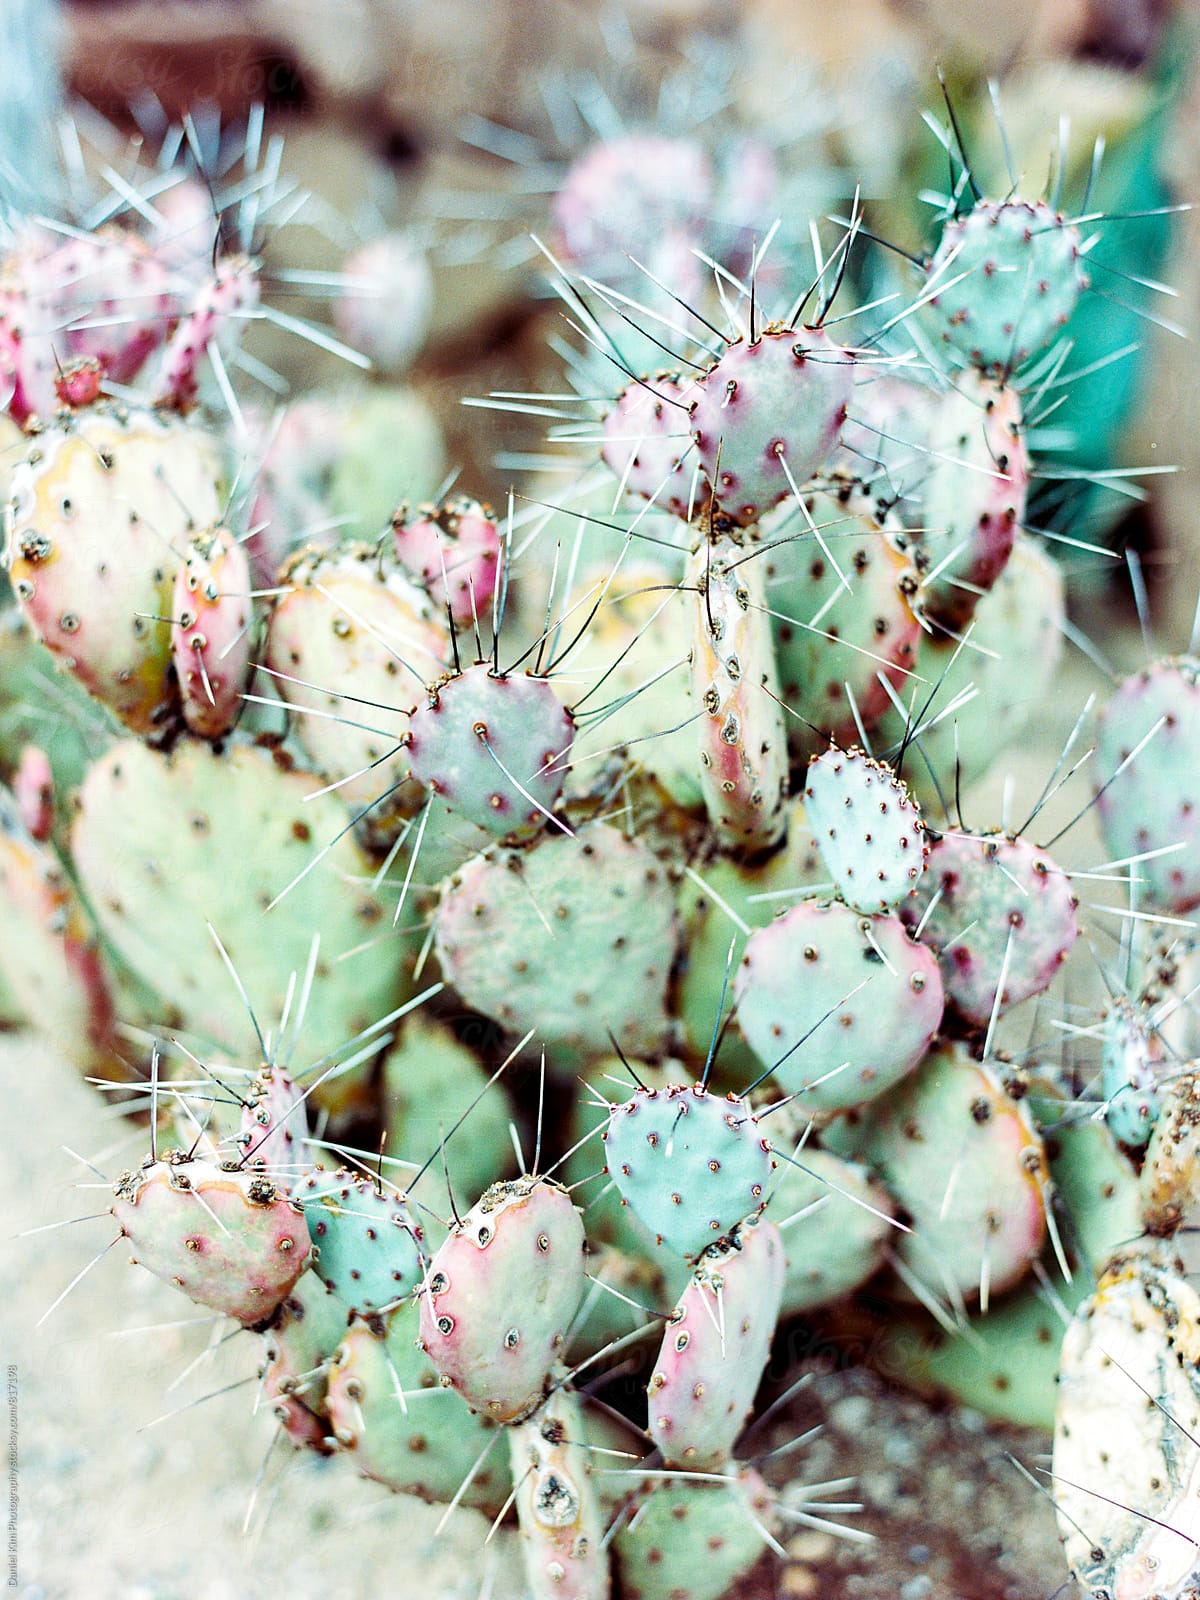 Colorful cactus